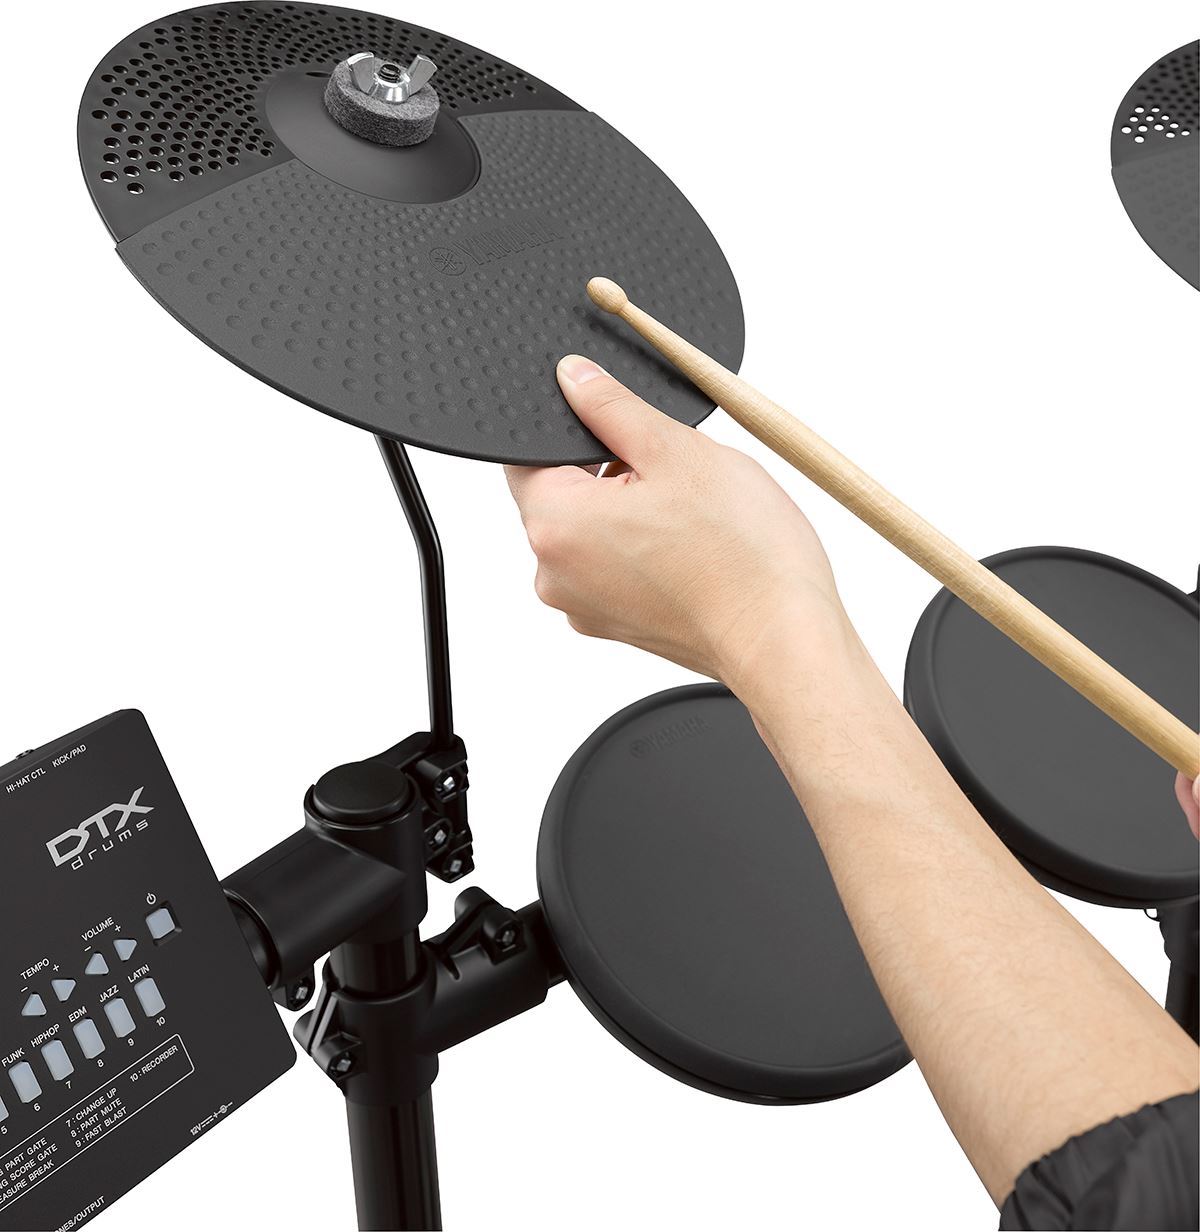 Yamaha DTX402K 5-piece Electronic Drum Set | Reco Music Malaysia